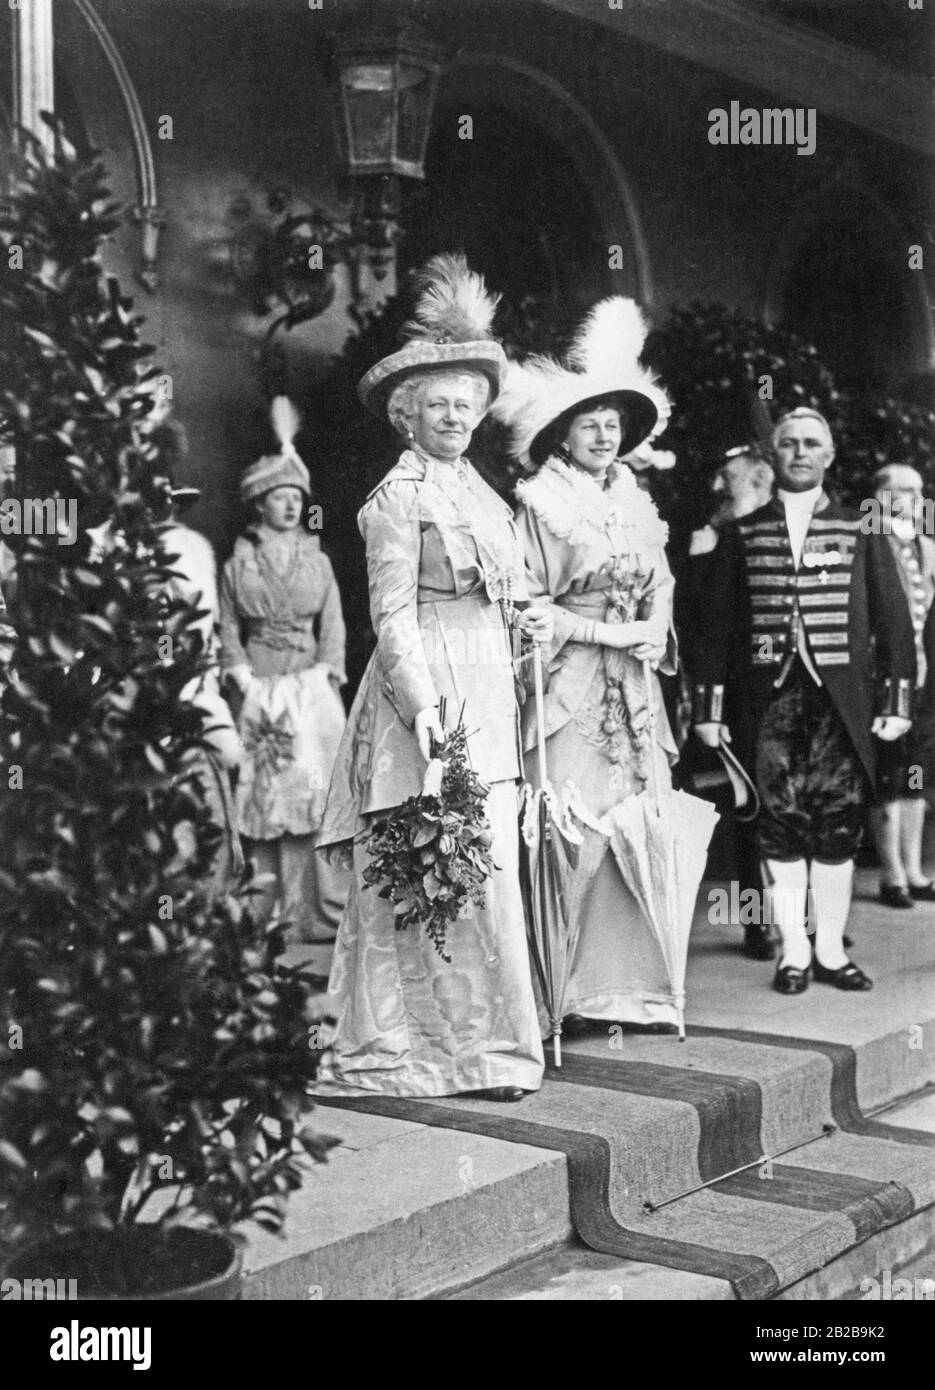 Empress Augusta Victoria of Schleswig-Holstein-Sonderburg-Augustenburg, wife of Emperor Wilhelm II (left), and her daughter, Princess Victoria Louise (right), at the christening of their first child Ernst August in 1914 in Braunschweig. Stock Photo